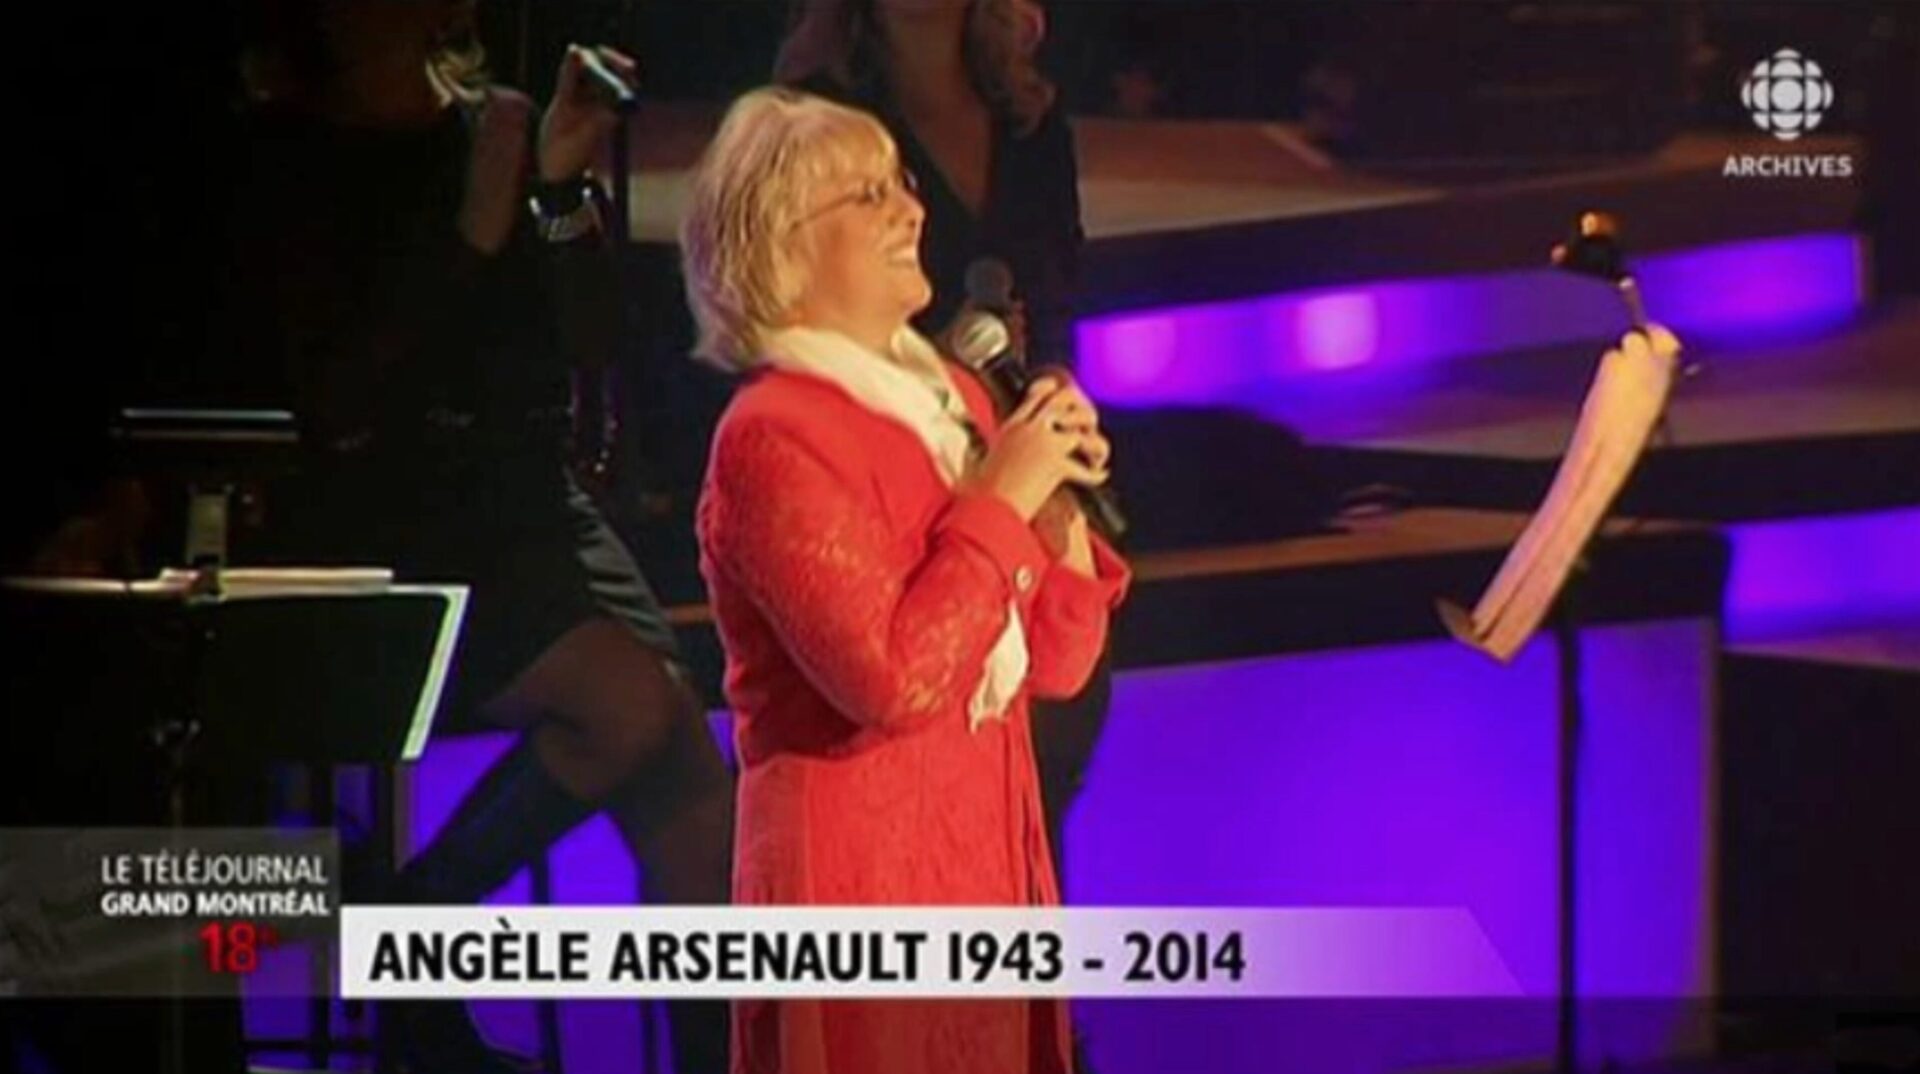 Rétrospective de la carrière d’Angèle Arsenault (1943-2014)